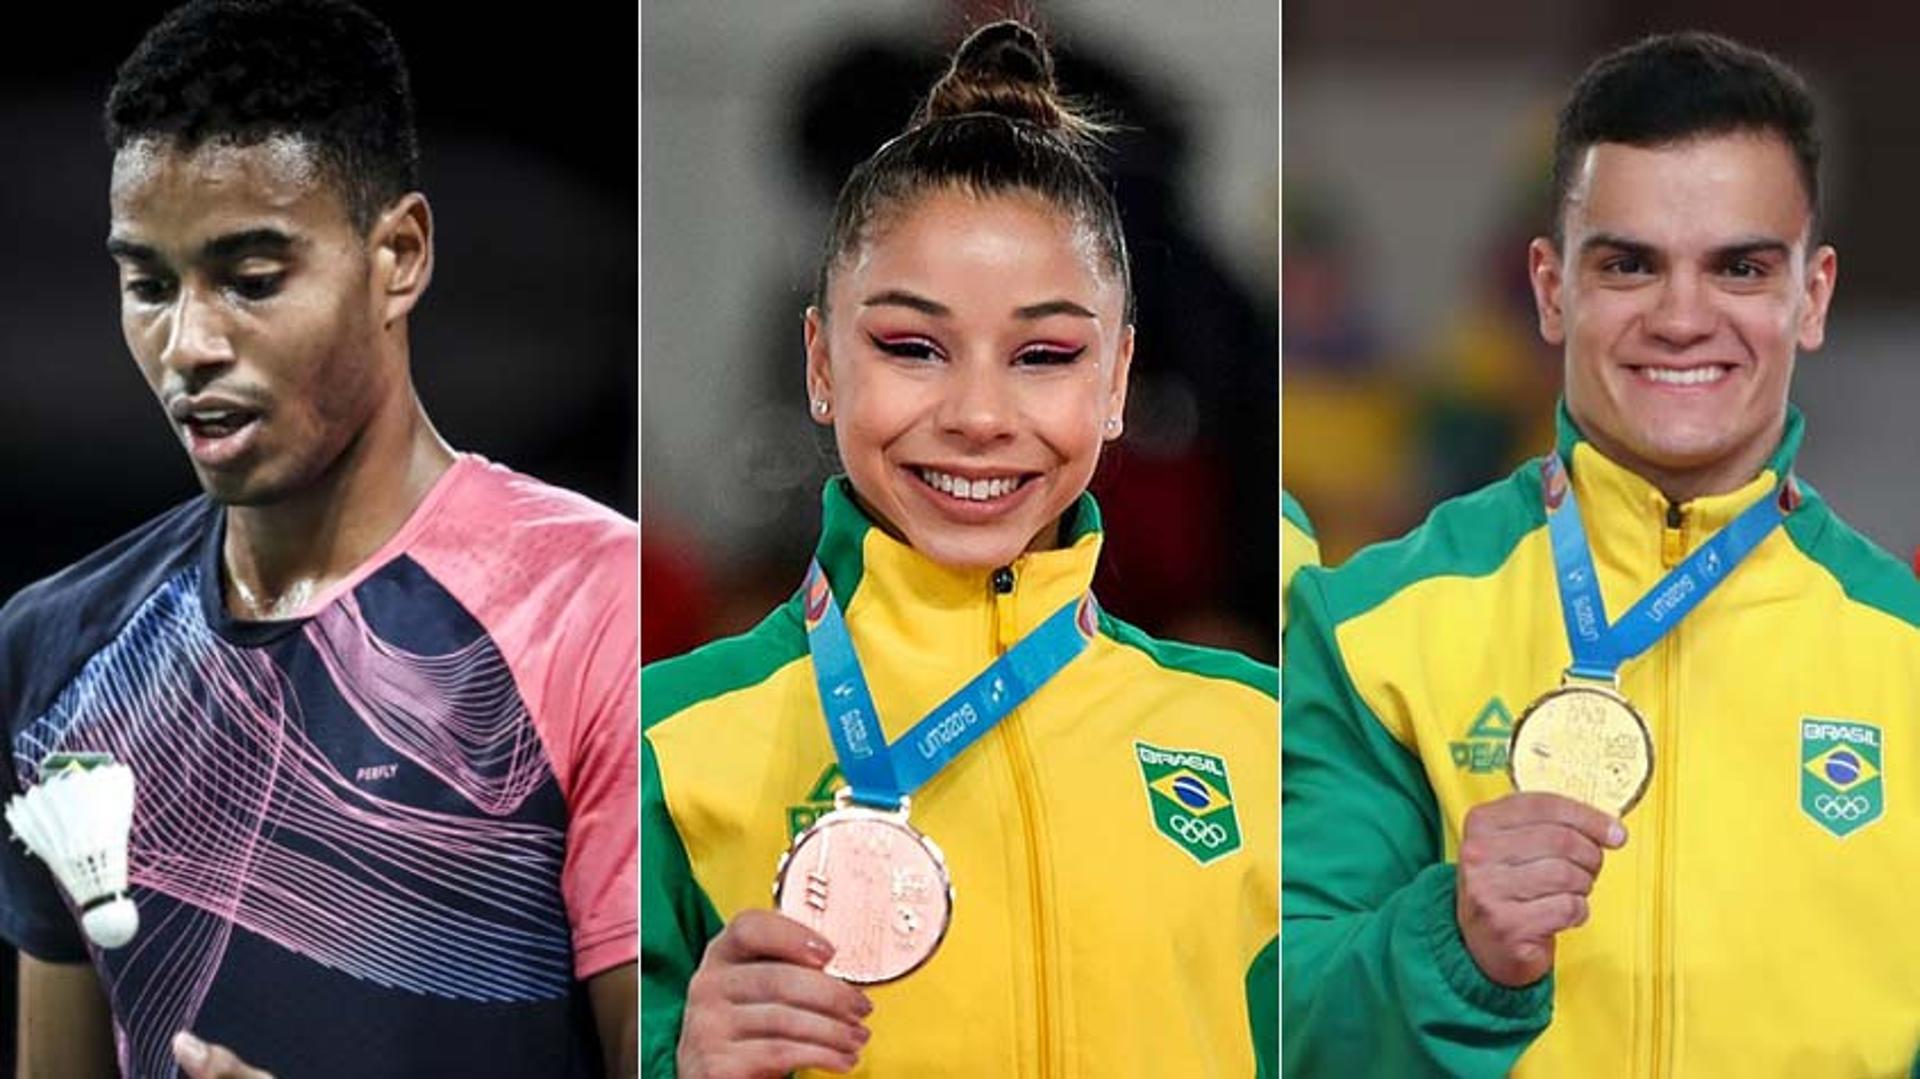 O oitavo dia do Pan-Americano terá as estreias do Brasil no vôlei e no handebol masculino. A tarde promete emoções no badminton, na ginastica e no surfe